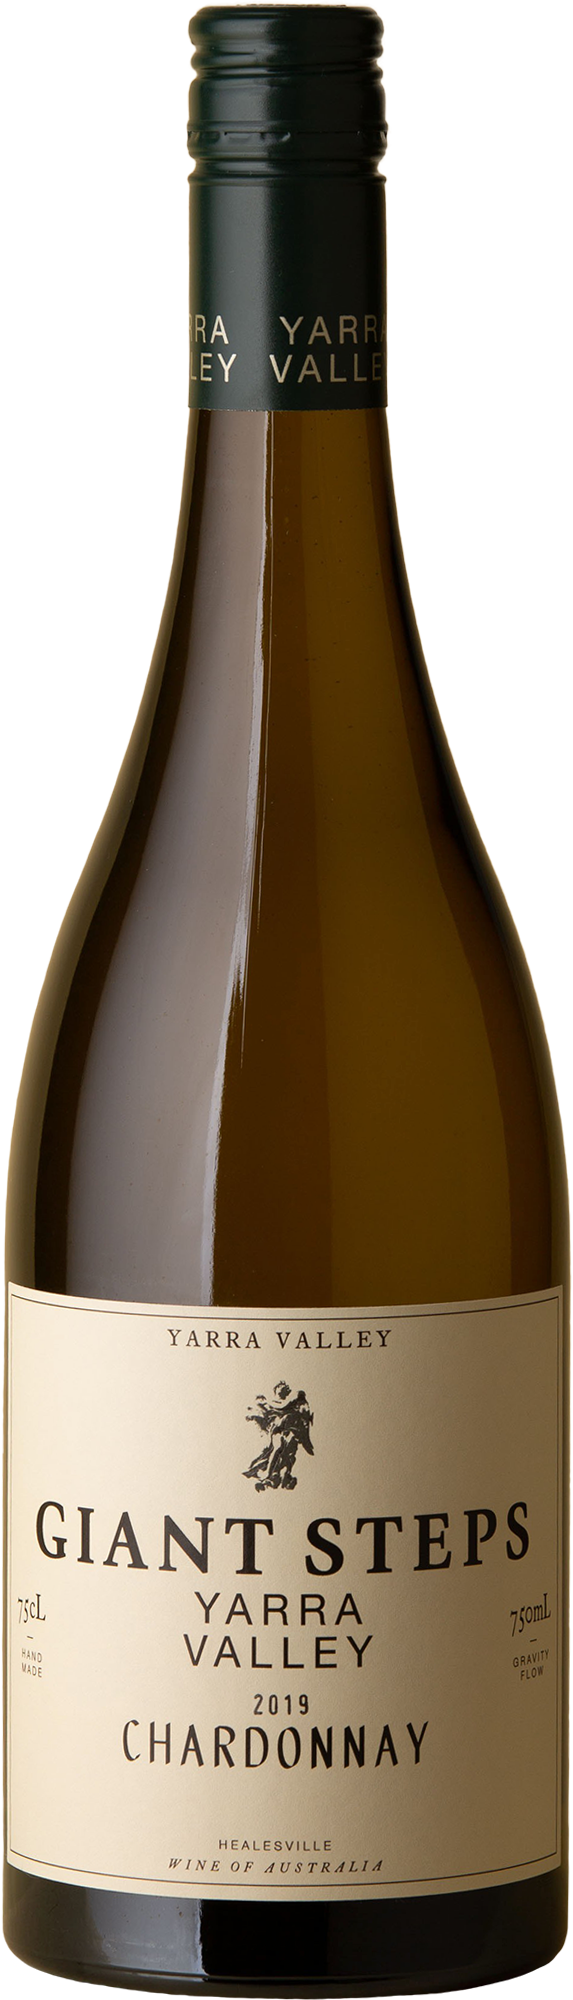 Giant Steps - Yarra Valley Chardonnay 2019 White Wine